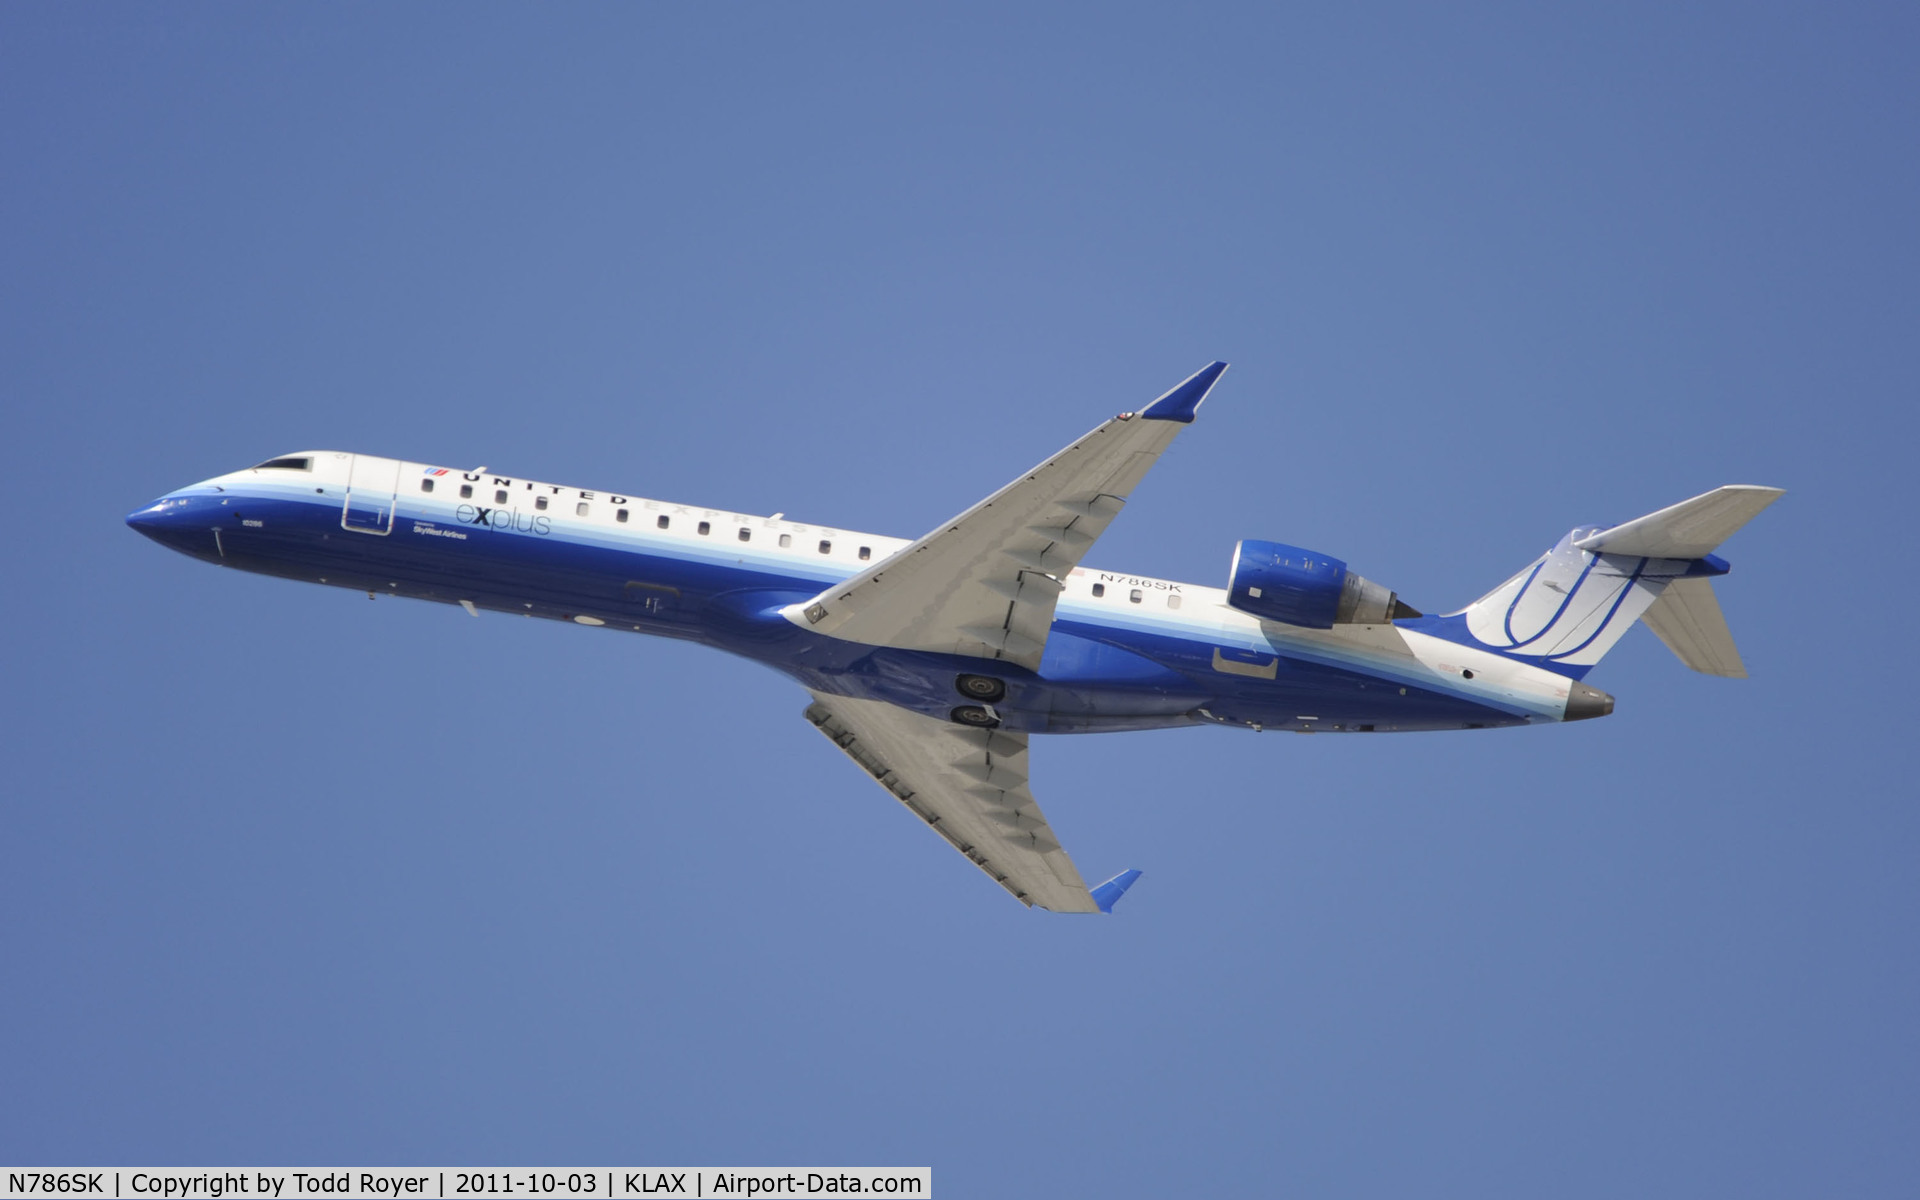 N786SK, 2009 Bombardier CRJ-700 (CL-600-2C10) Regional Jet C/N 10286, Departing LAX